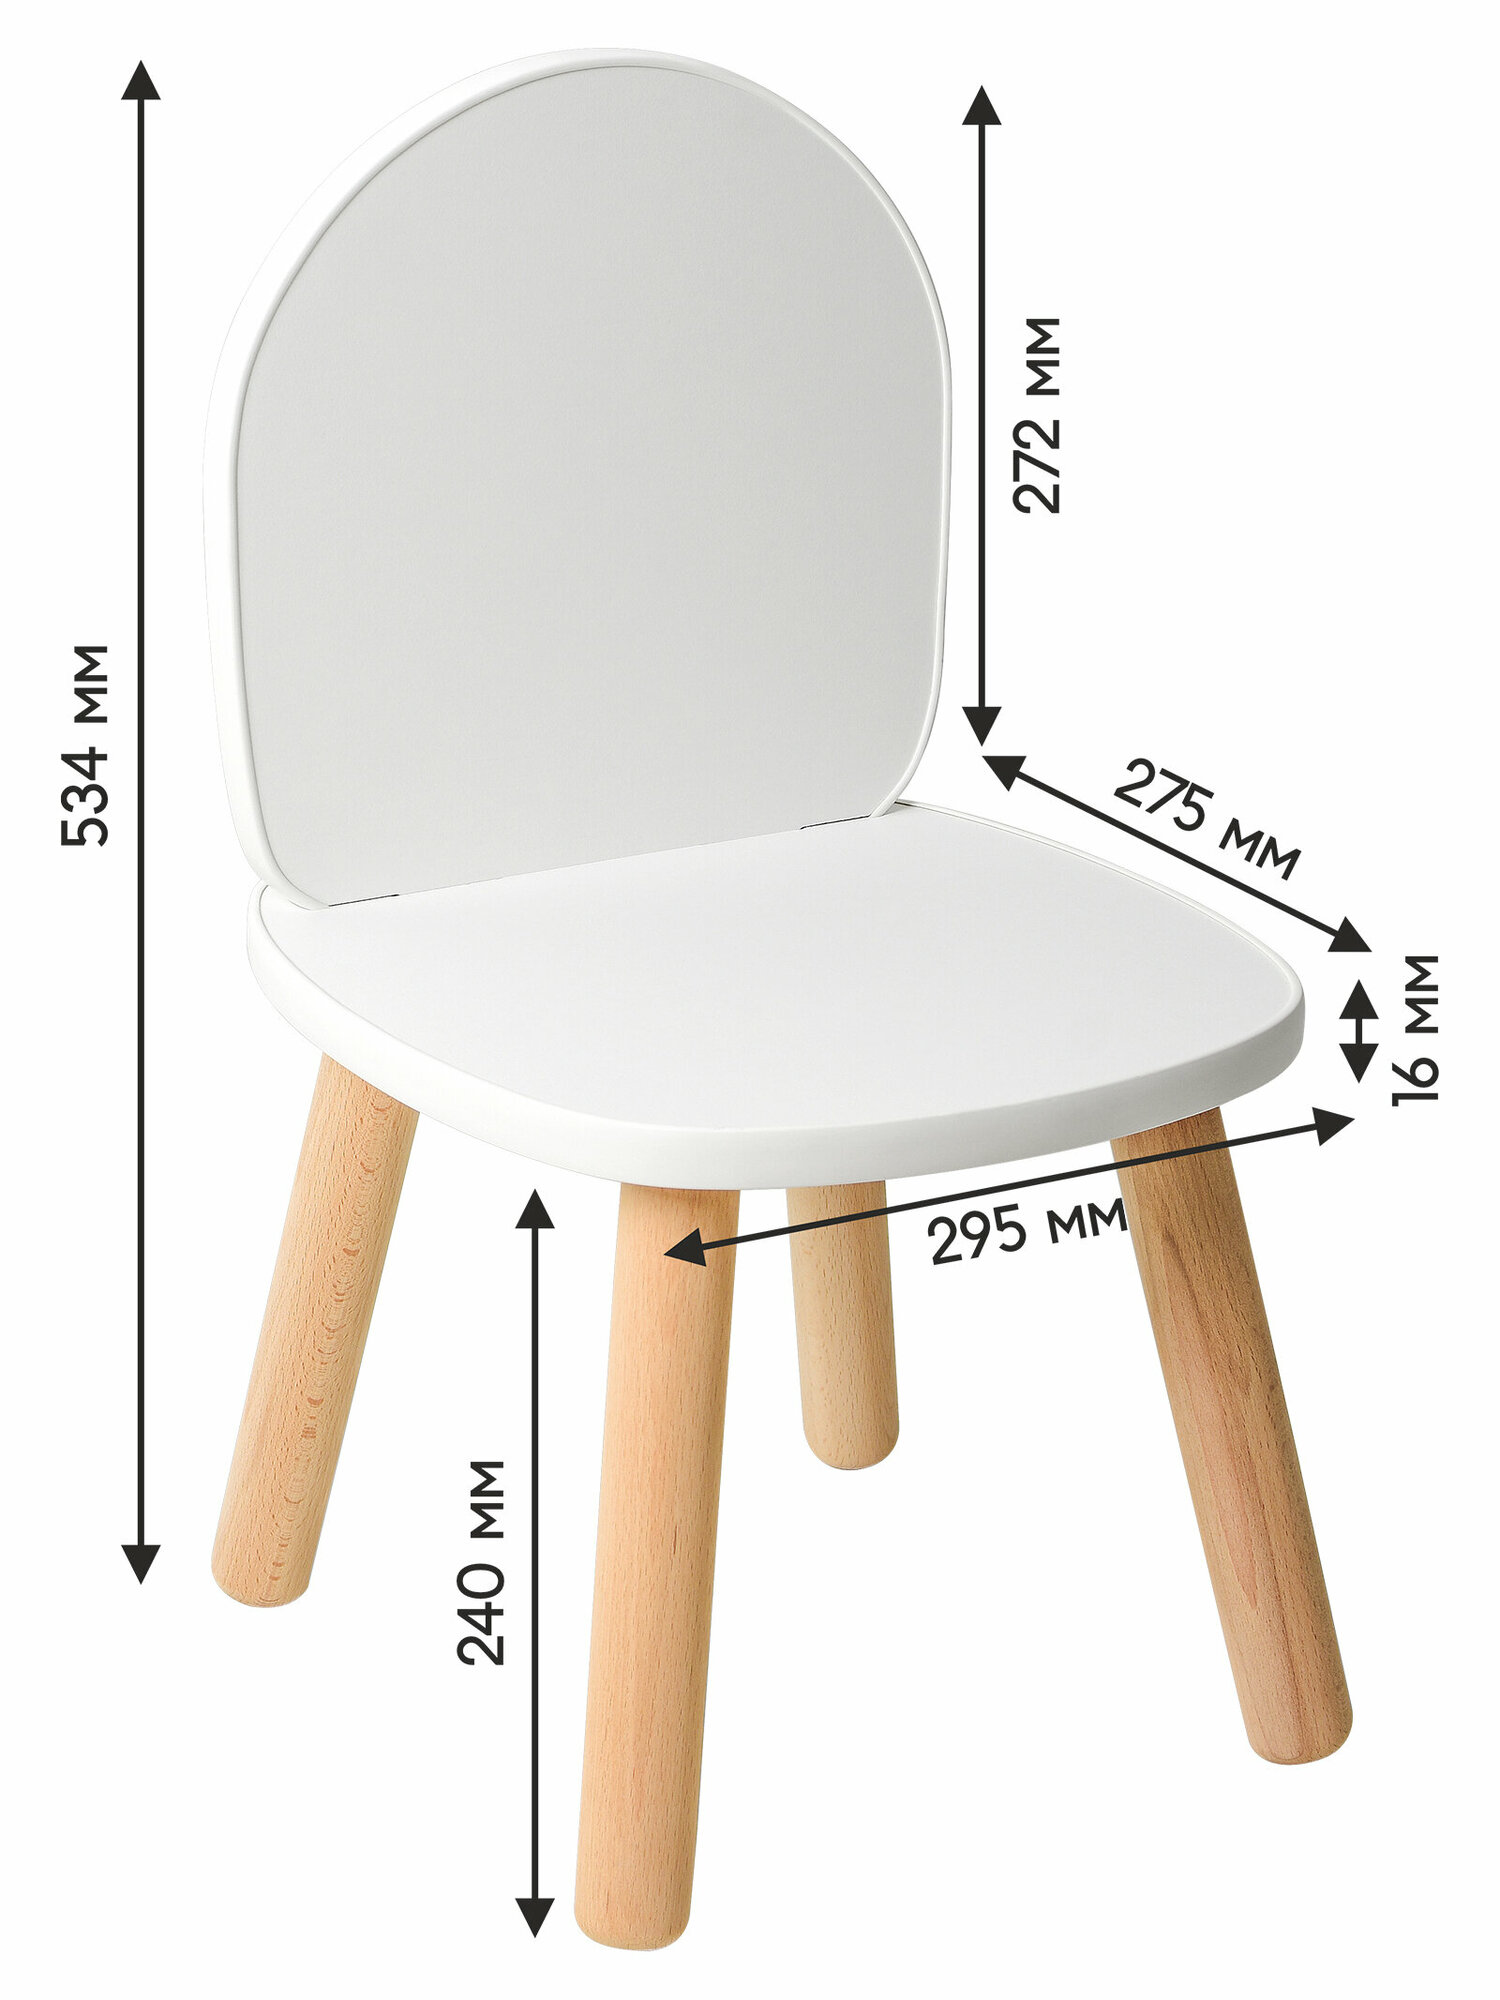 Детский стол и стулья из дерева MEGA TOYS Прямоугольный комплект 2 стульчика, 1 столик / Набор мебели деревянный для детской комнаты для малышей - фотография № 11